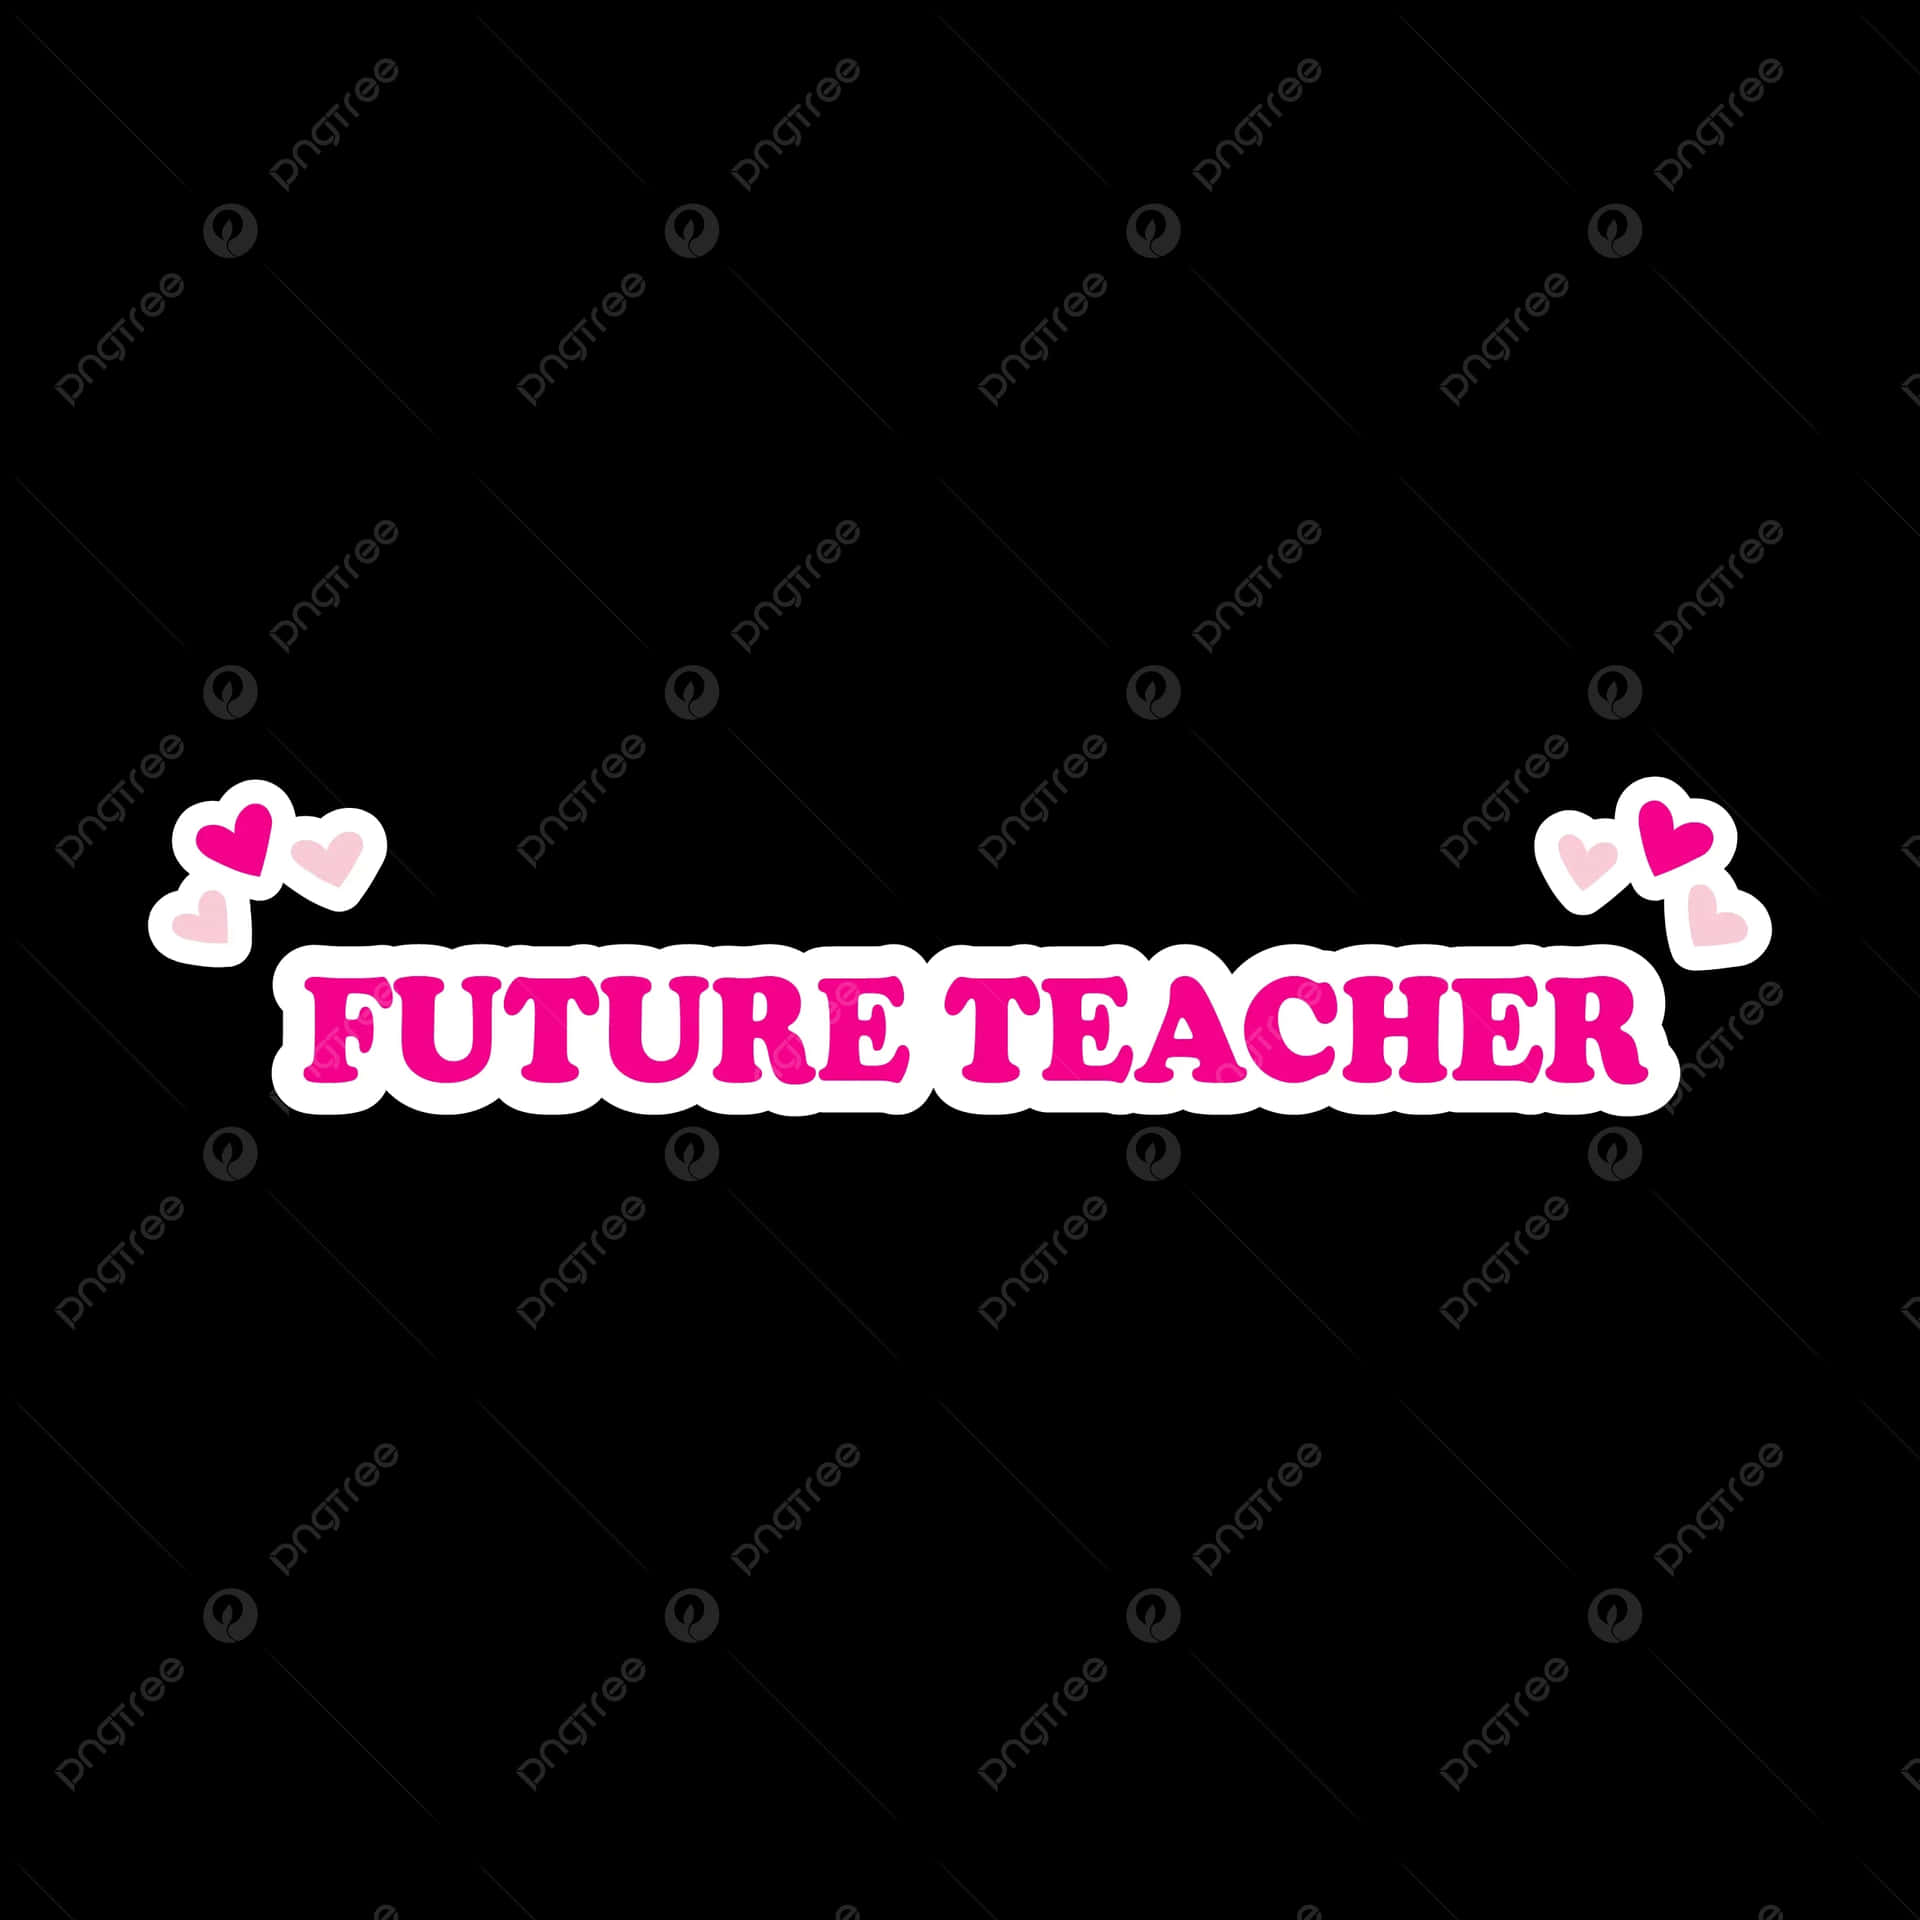 Future Teacher Graphic Design Wallpaper